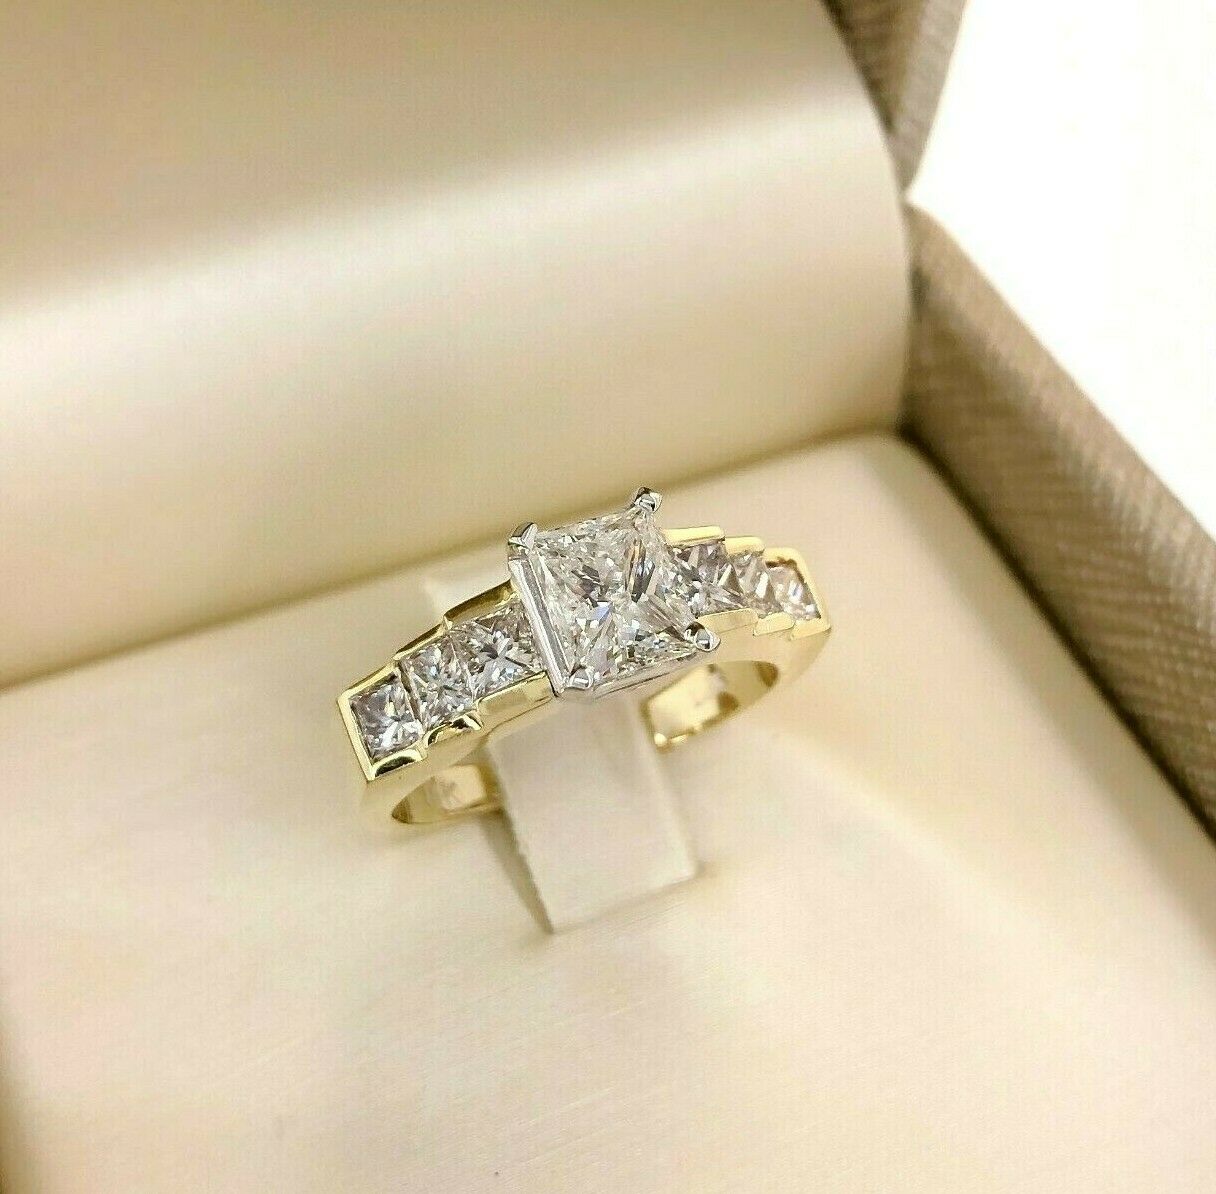 2.02 Carats t.w. Princess Cut Diamonds Engagement Ring 1 Carat Center 14K 2 Tone